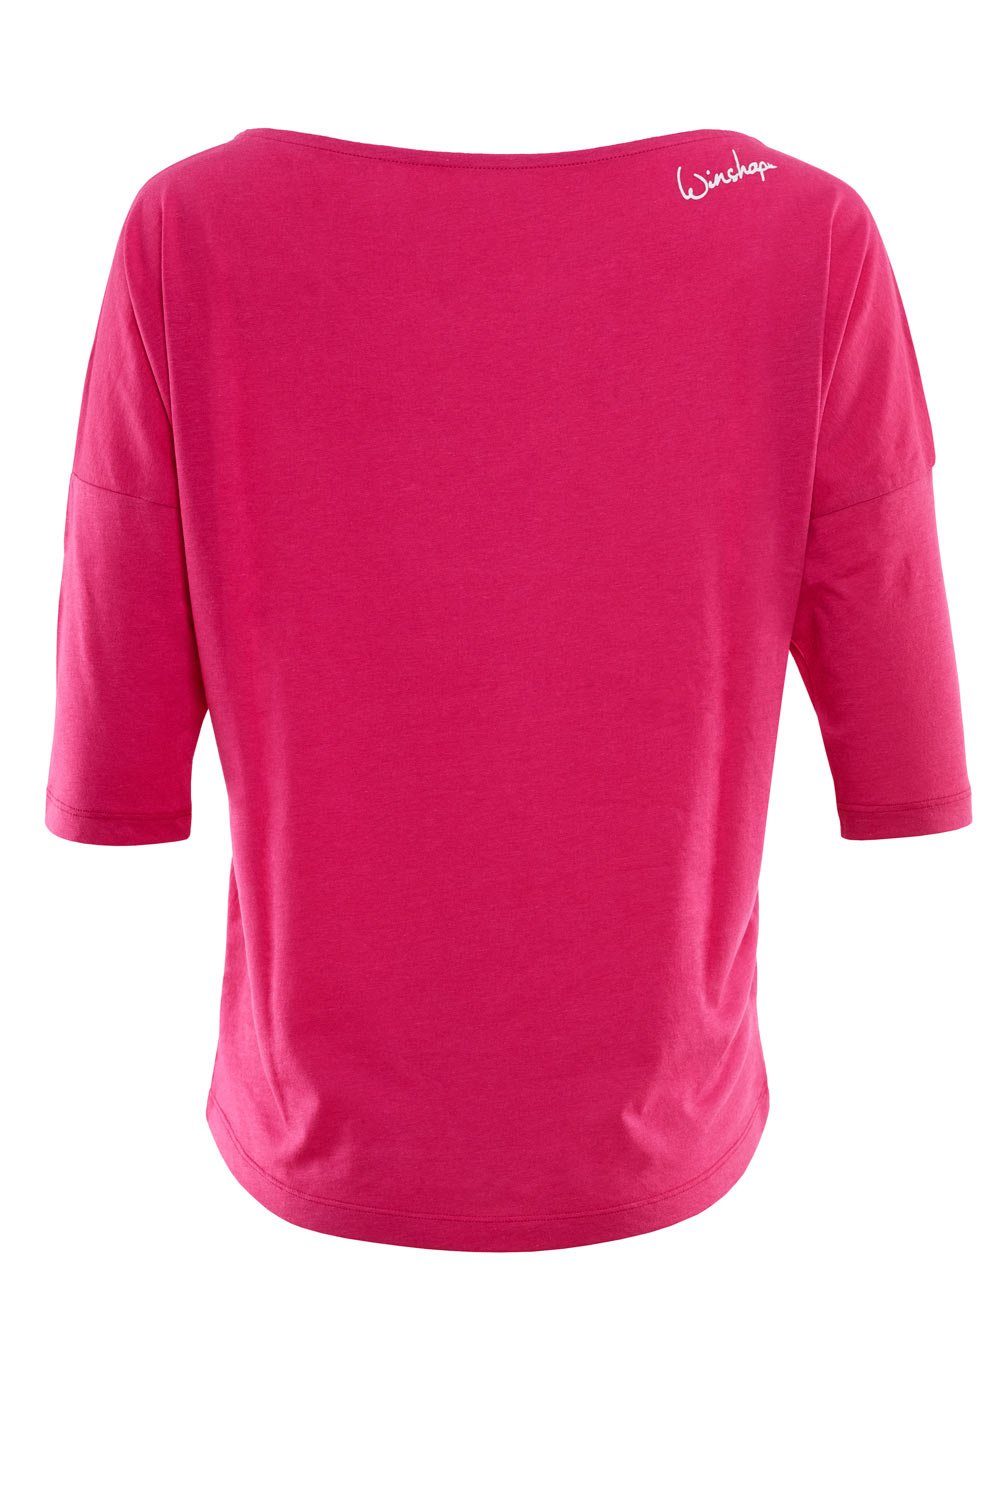 Winshape 3/4-Arm-Shirt MCS001 ultra weißem pink - deep mit Glitzer-Aufdruck glitzer weiß leicht